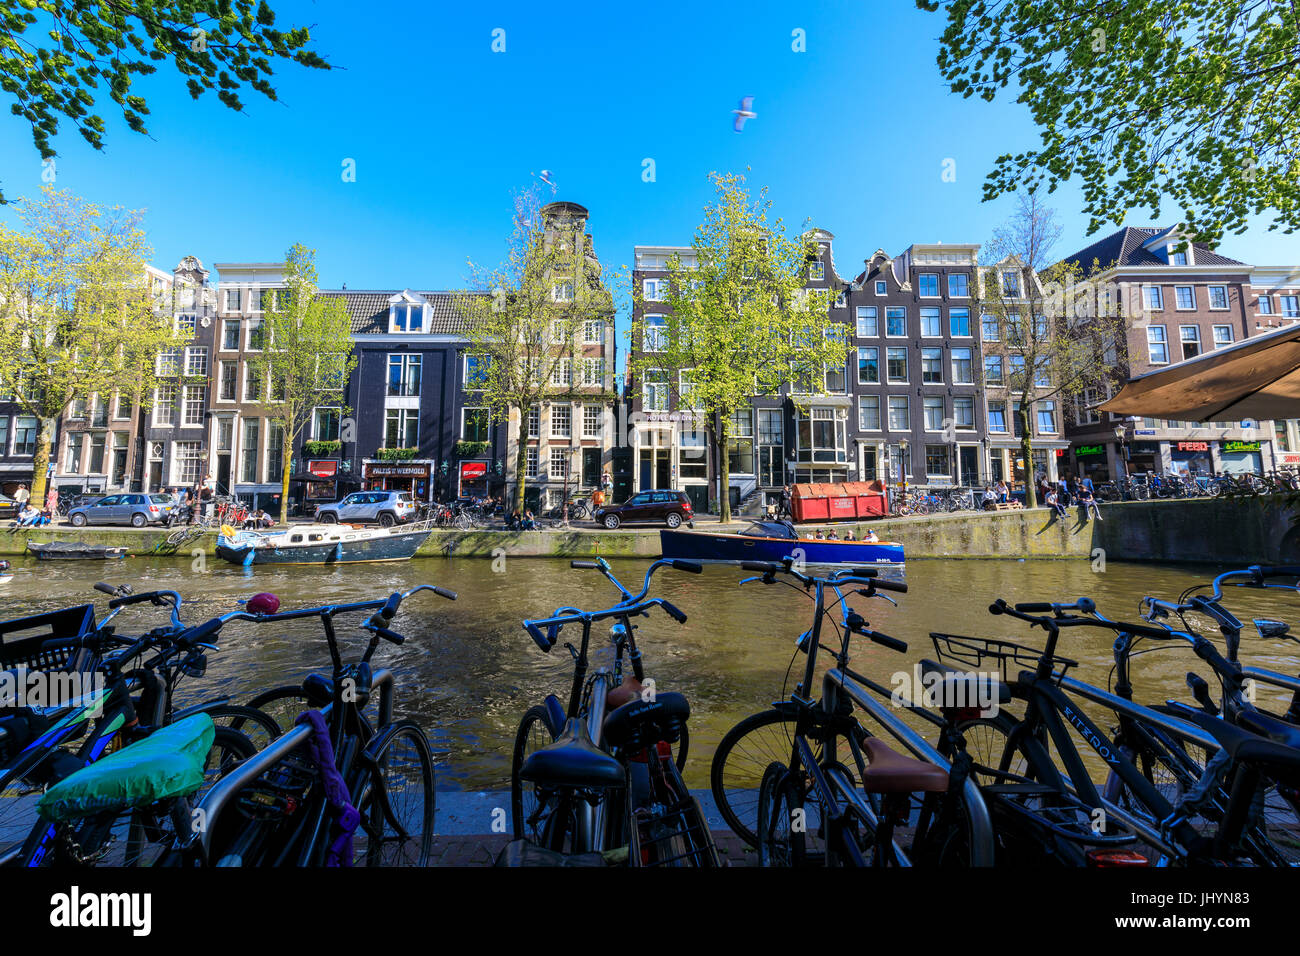 Les vélos garés sur les rives de la rivière Amstel et ses maisons typiques, Amsterdam, Hollande (Pays-Bas), de l'Europe Banque D'Images